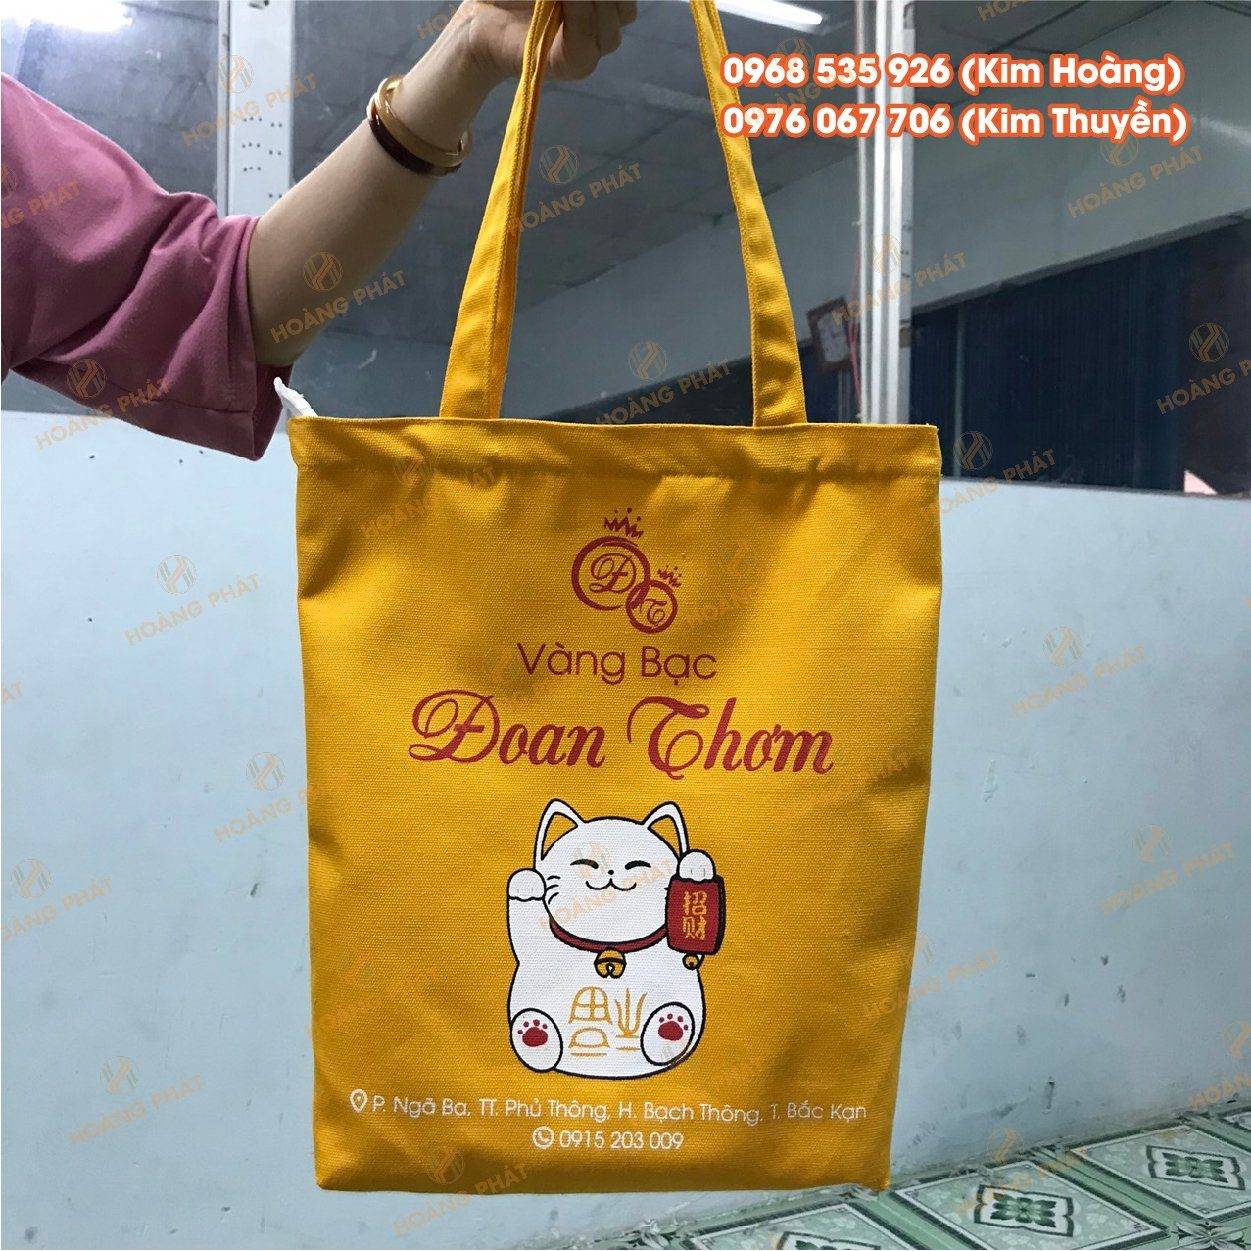 Cửa hàng bán túi vải bố giá rẻ ở Hà Nội